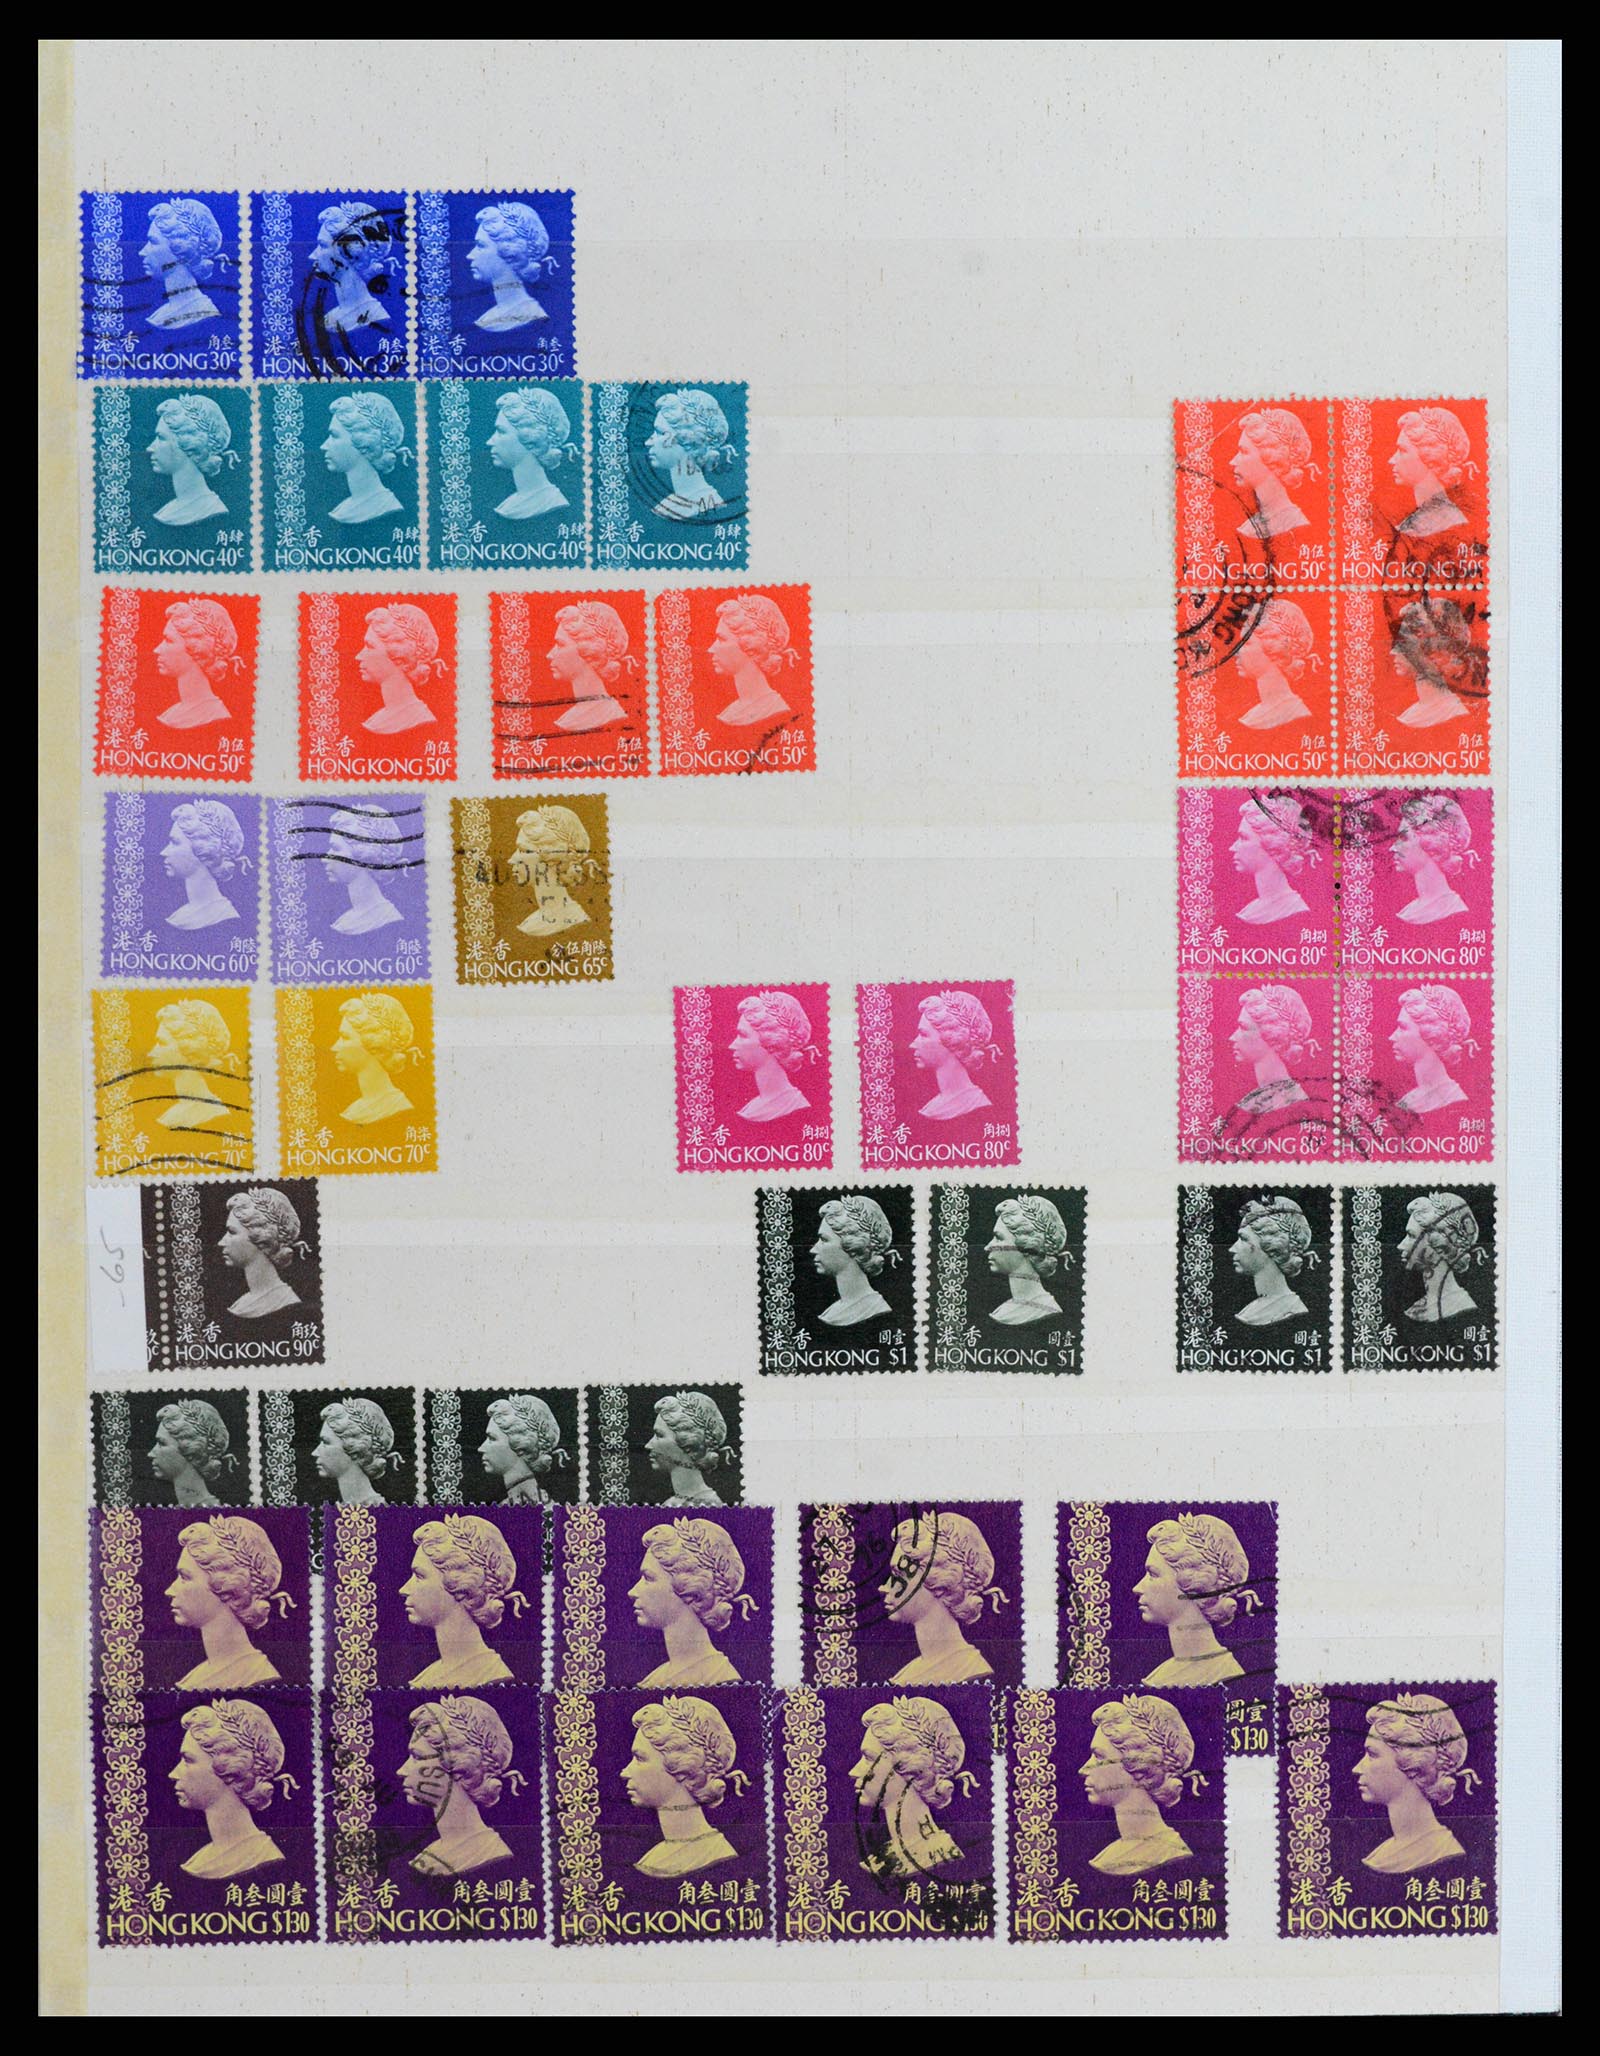 37358 022 - Stamp collection 37358 Hong Kong 1861-1997.